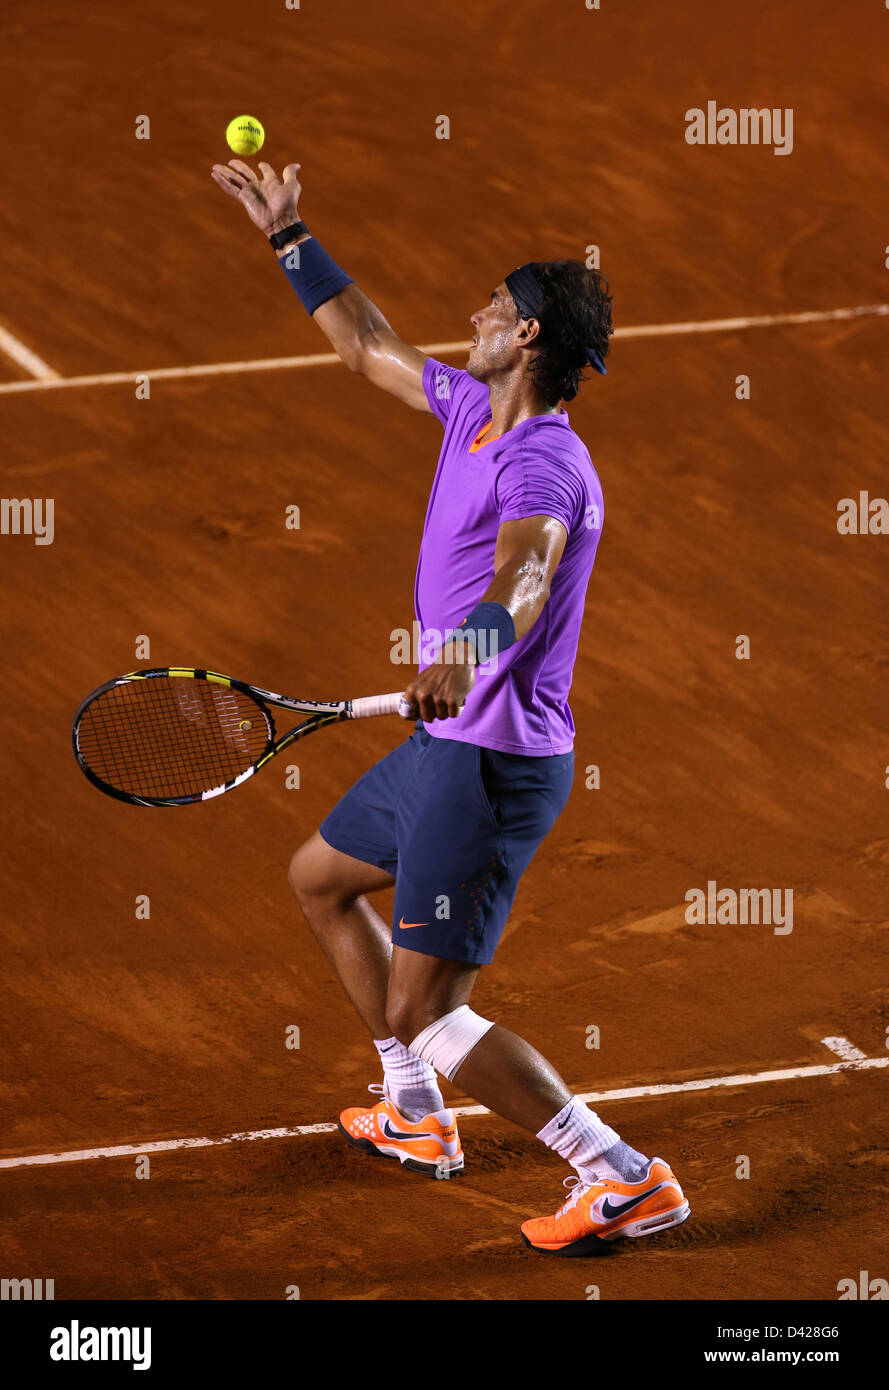 Acapulco, México - Open de Tenis 2013 - Rafael Nadal de España lanza el  balón para servir contra Nicolás Almagro de España en la semifinal match  durante el dia 5 del Abierto